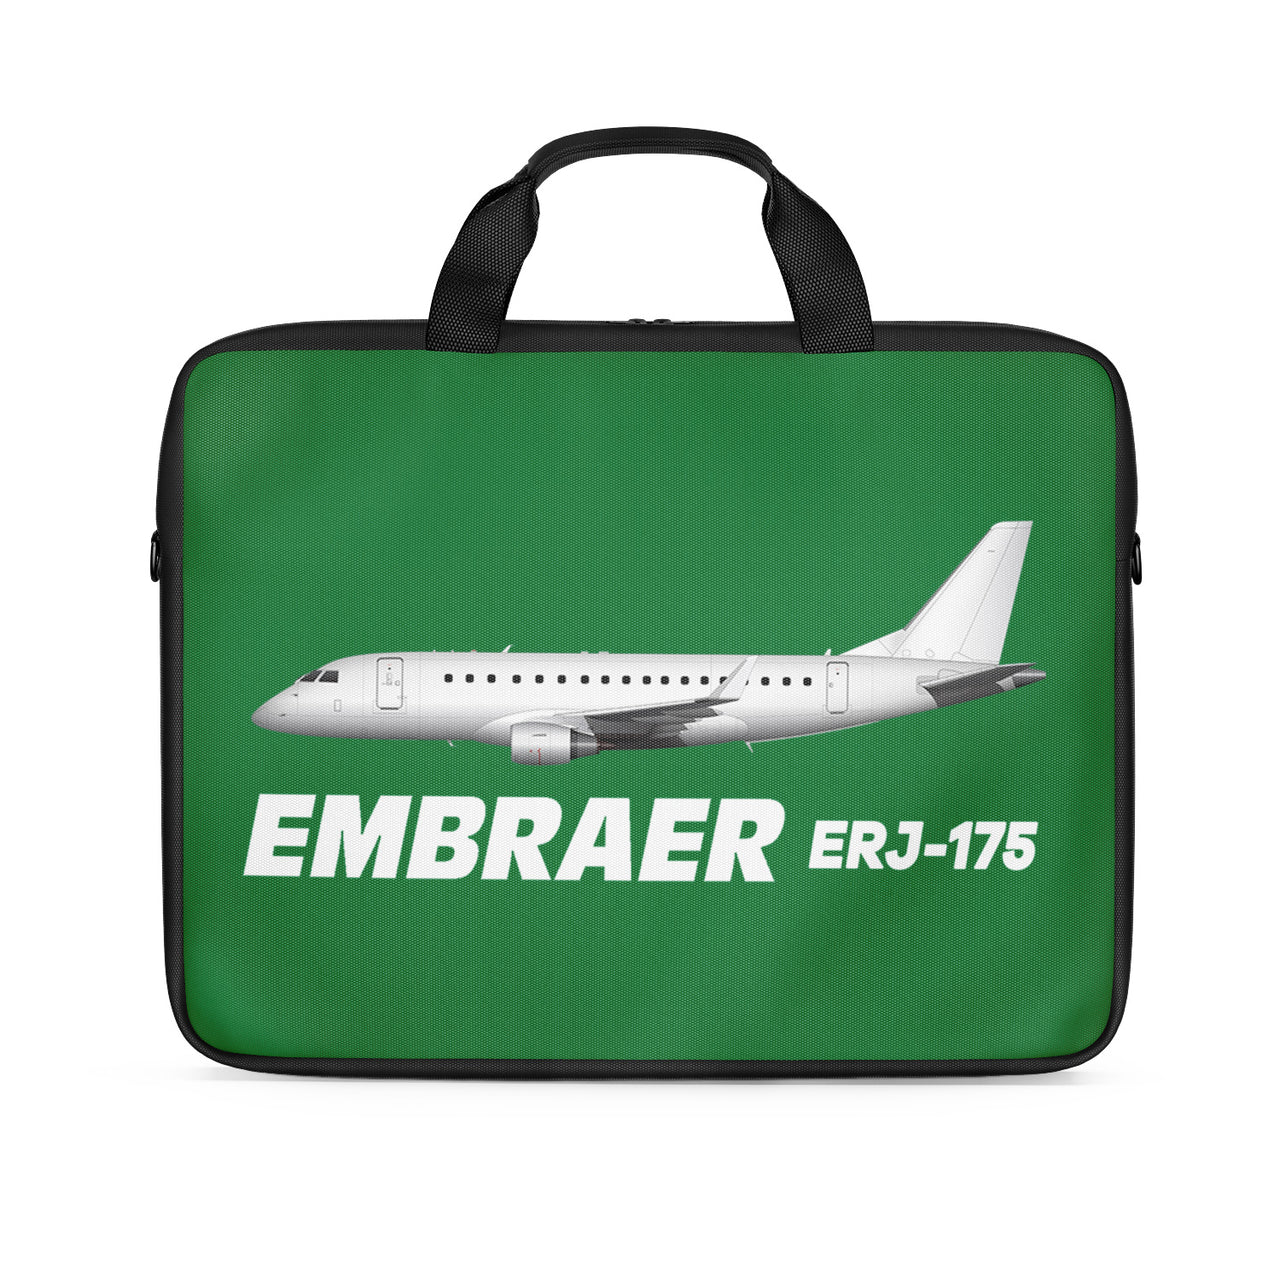 The Embraer ERJ-175 Designed Laptop & Tablet Bags